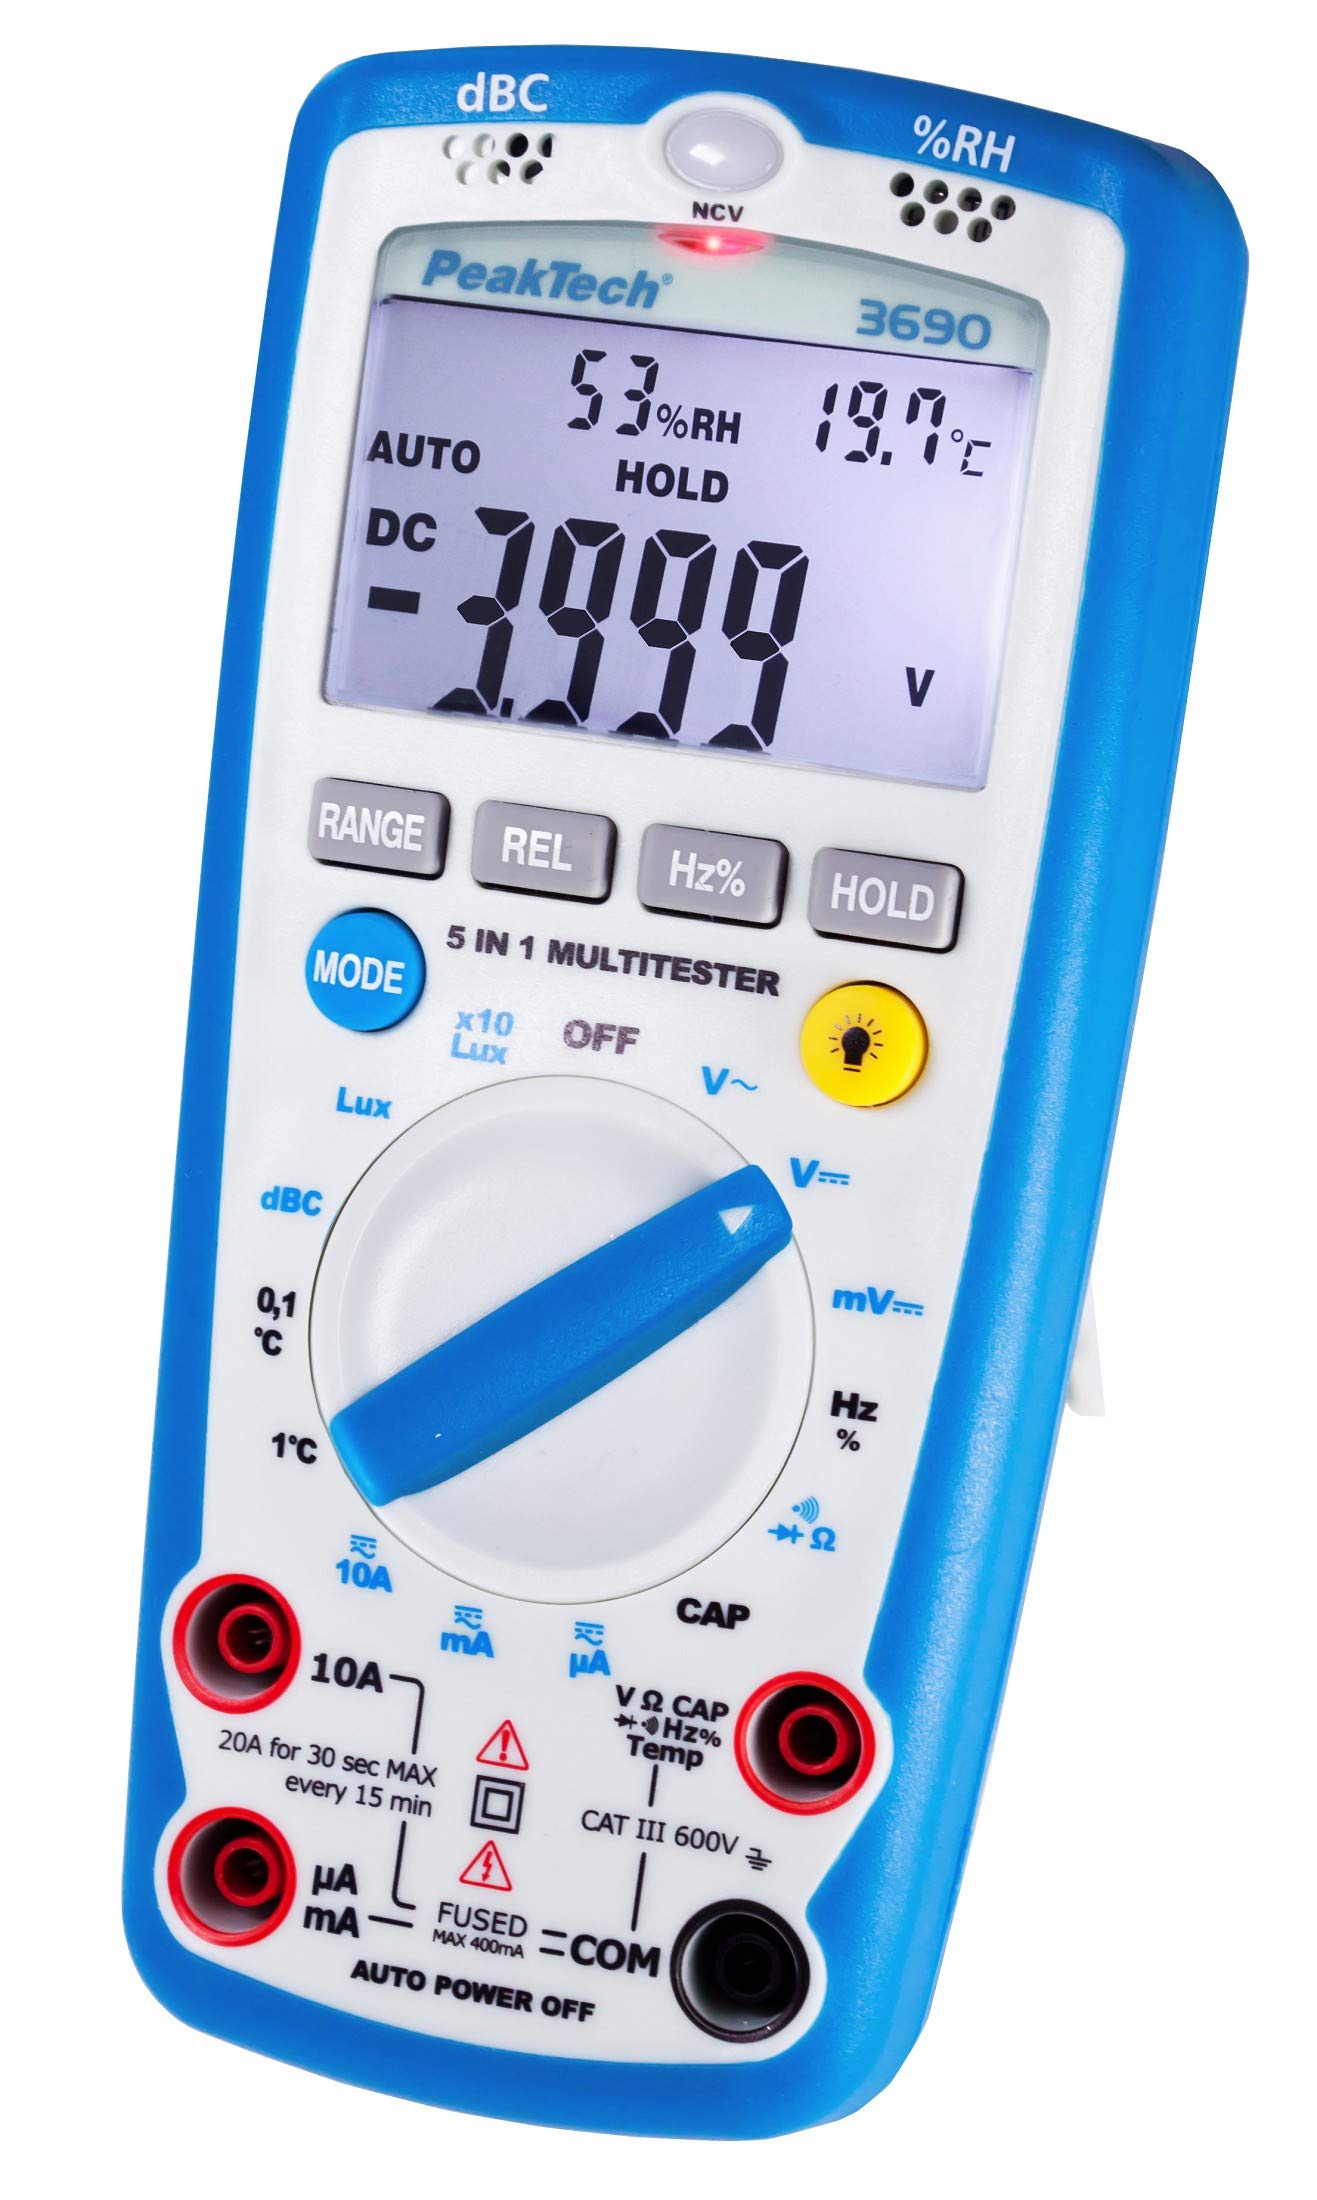 PeakTech 3690 – Digitales 5-in-1 Multimeter, Luxmeter, Schallpegelmessgerät, Luftfeuchtigkeitsmessgerät, Spannungsmesser, Thermometer, Handmultimeter, Durchgangsprüfer, Messgerät, 4000 Counts - 600 V